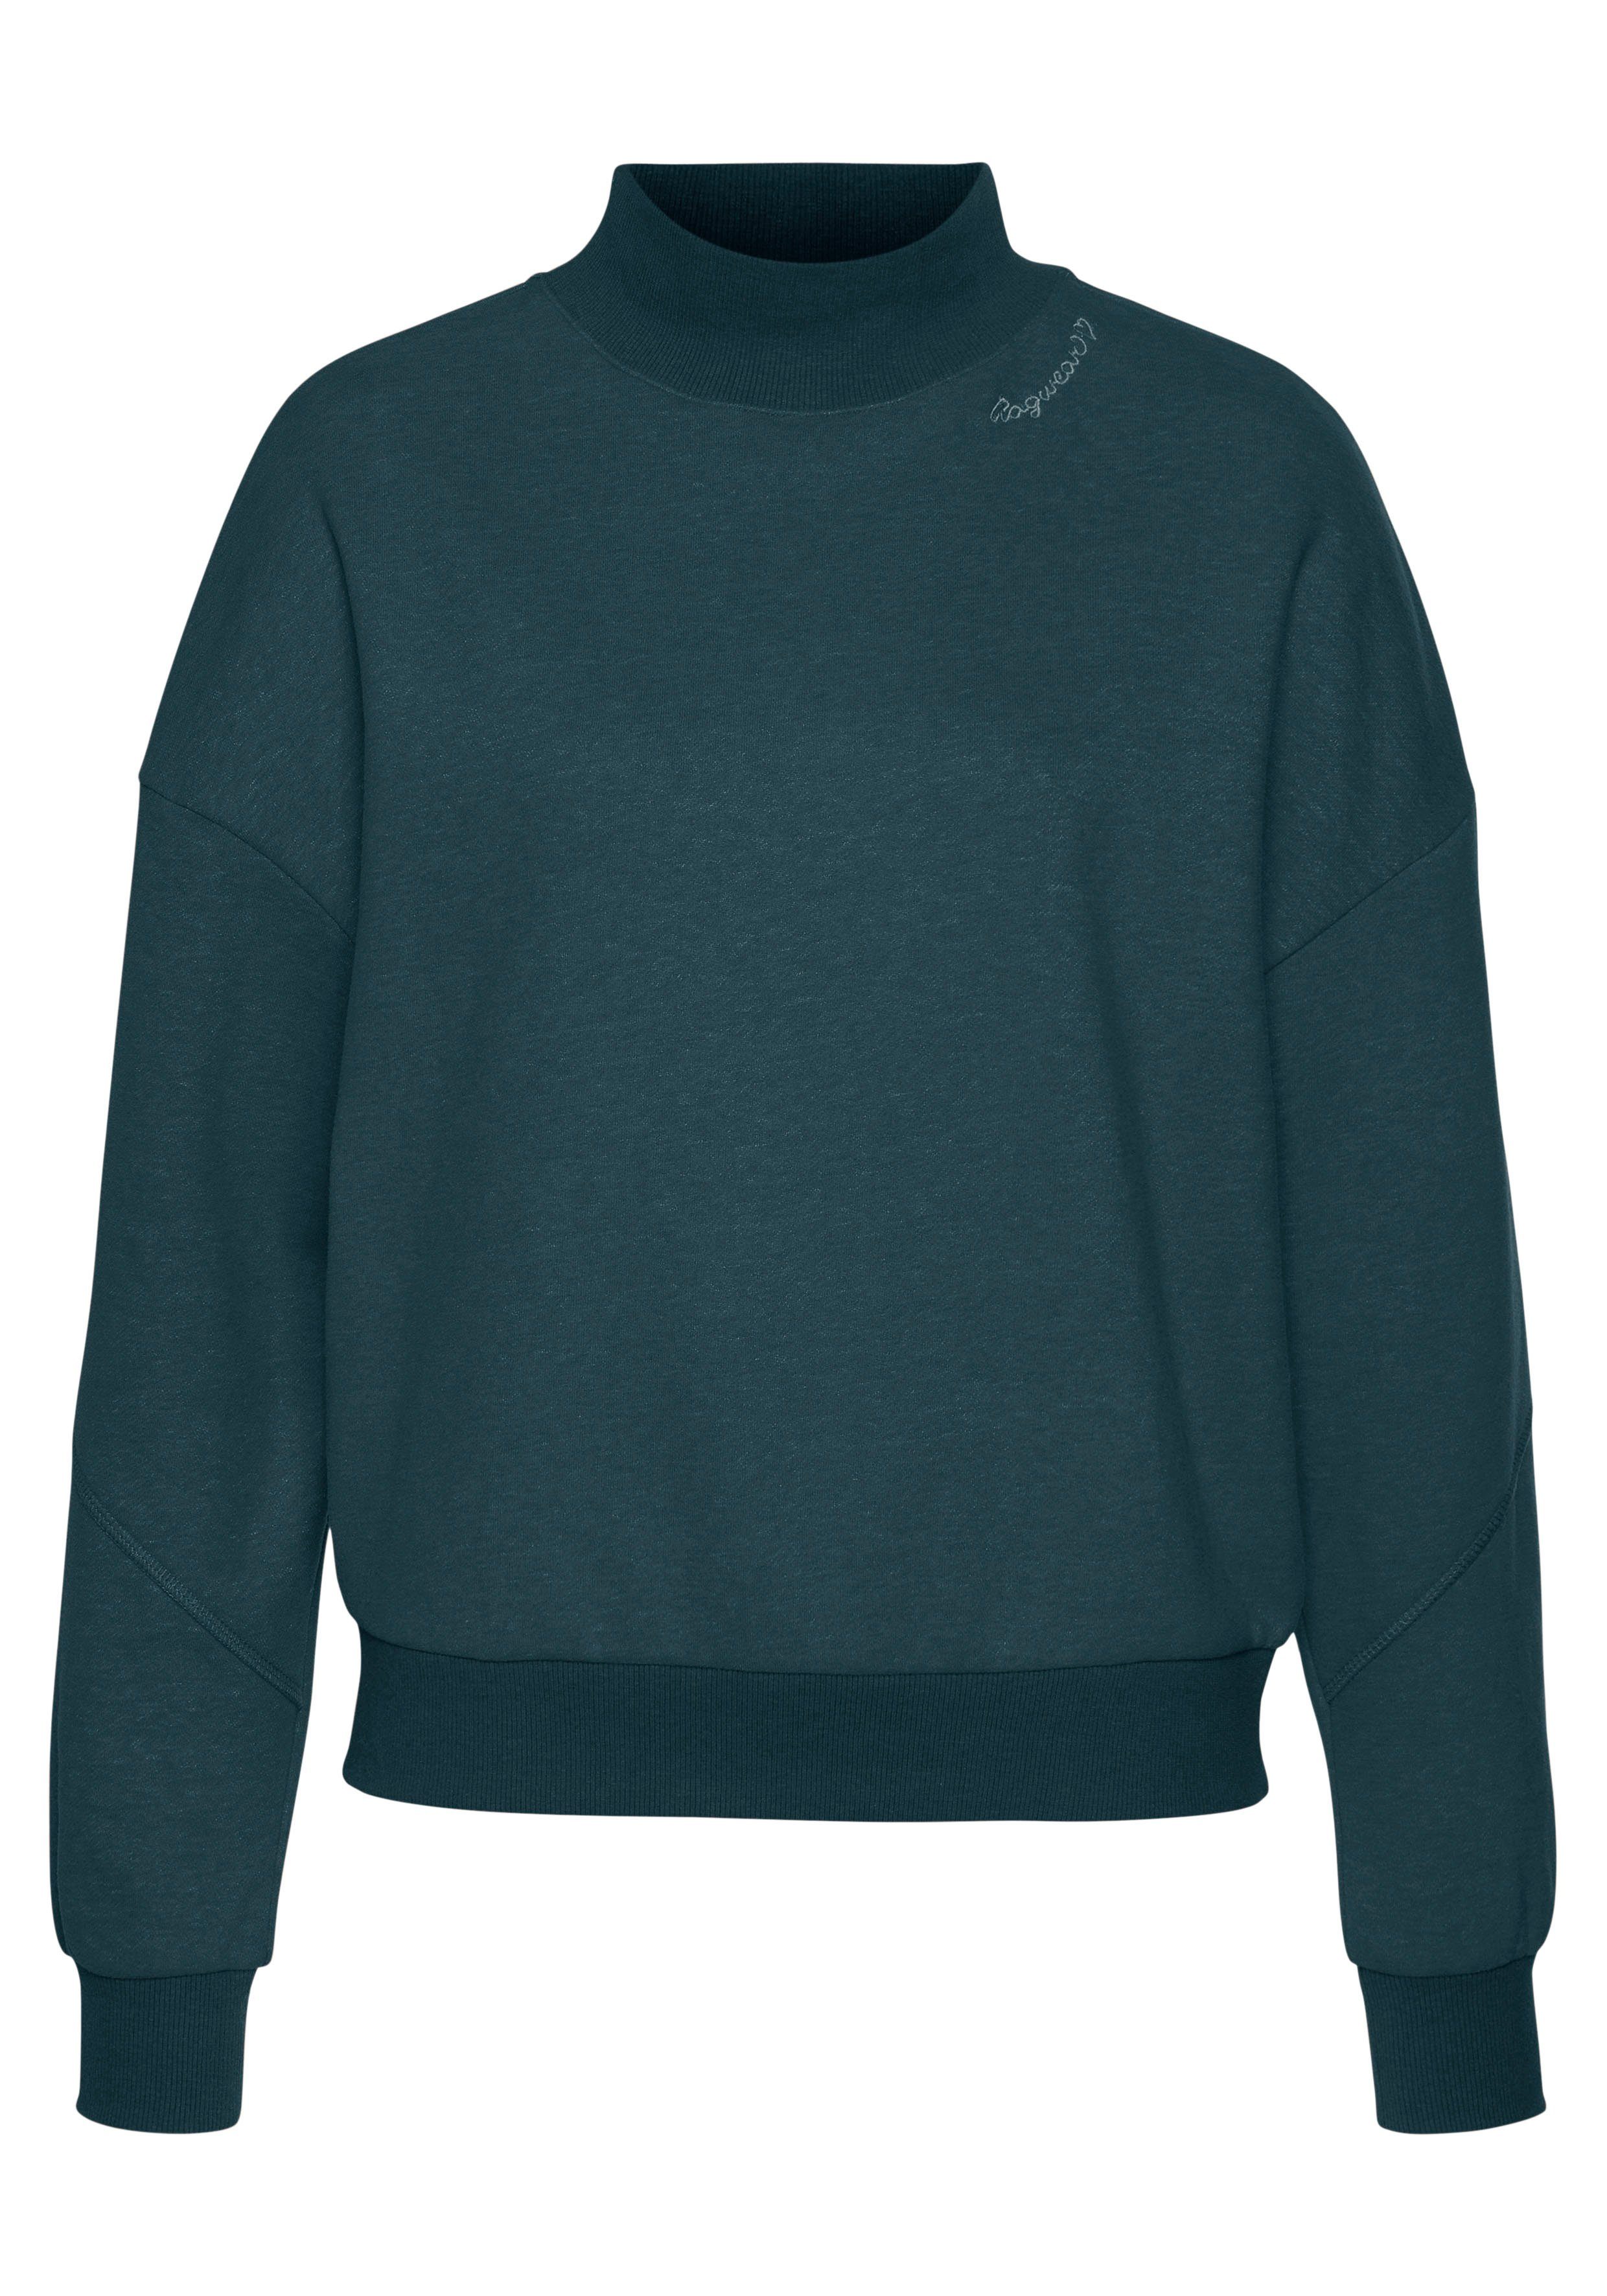 Sweater green KAILA dark 5021 SWEAT Ragwear